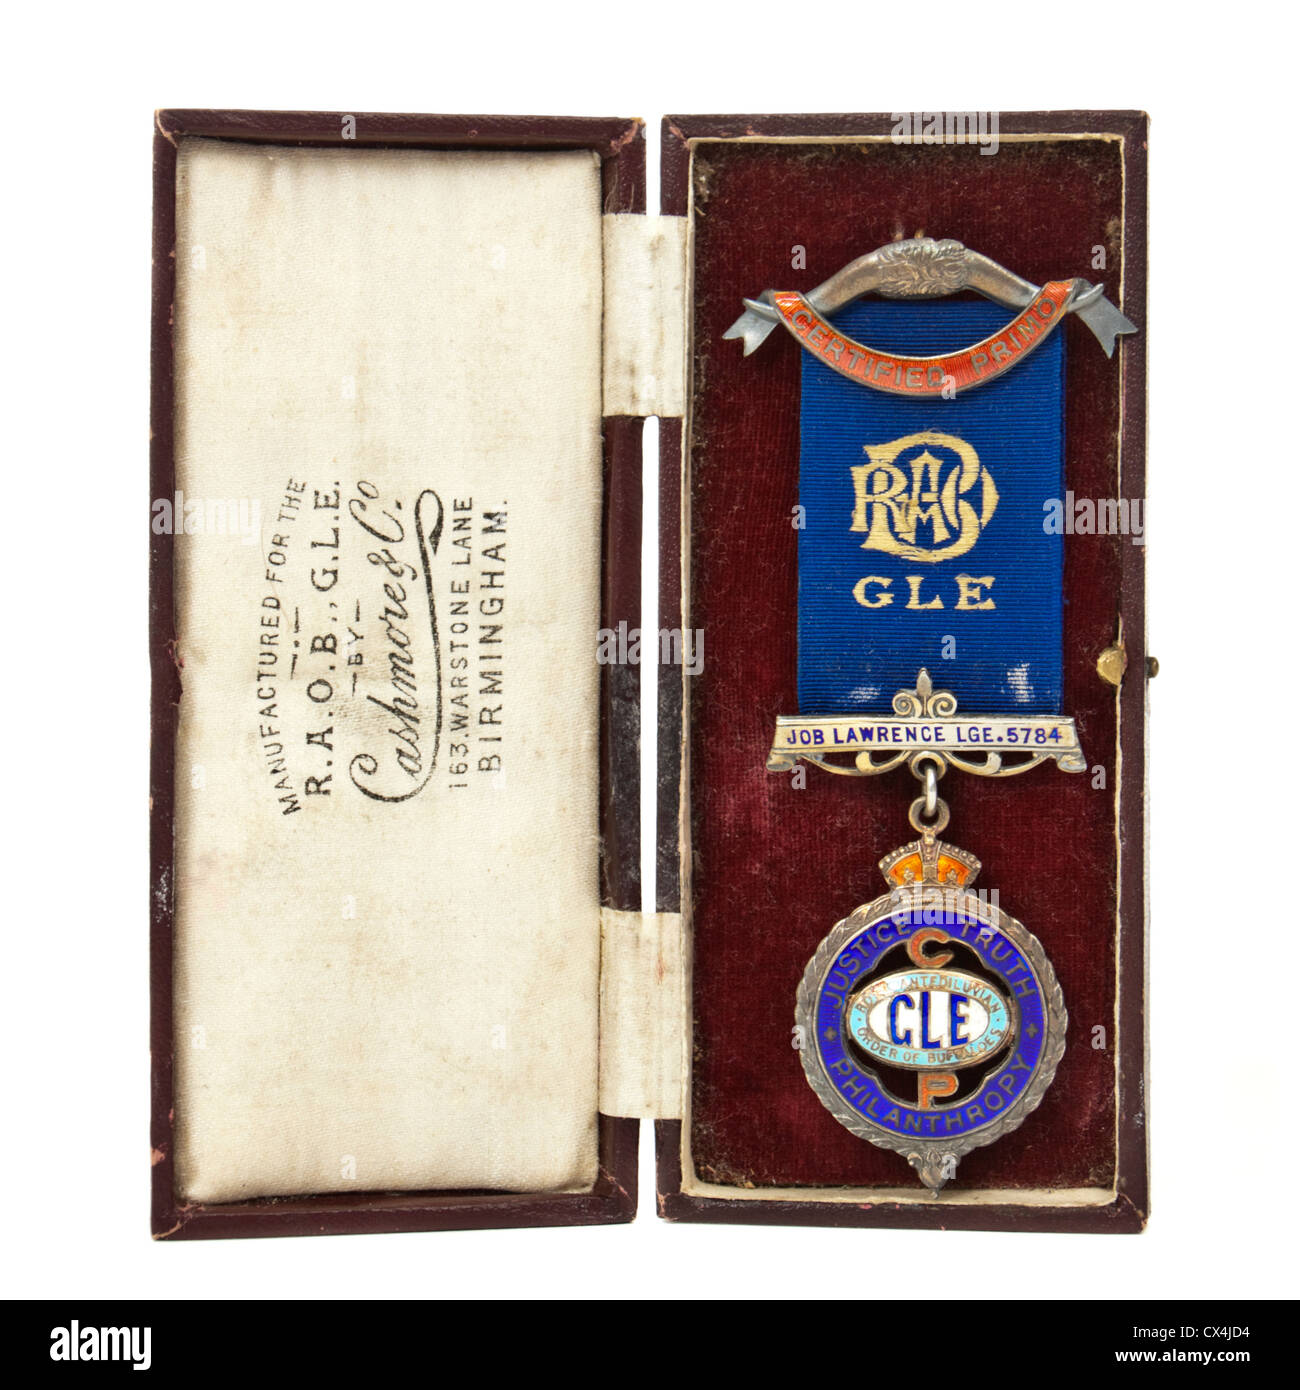 1927 Sterling Silver jewel rilasciato dall'RAOB (Royal Antedeluvian ordine di bufale - Lavoro Lawrence Lodge n. 5784) Foto Stock